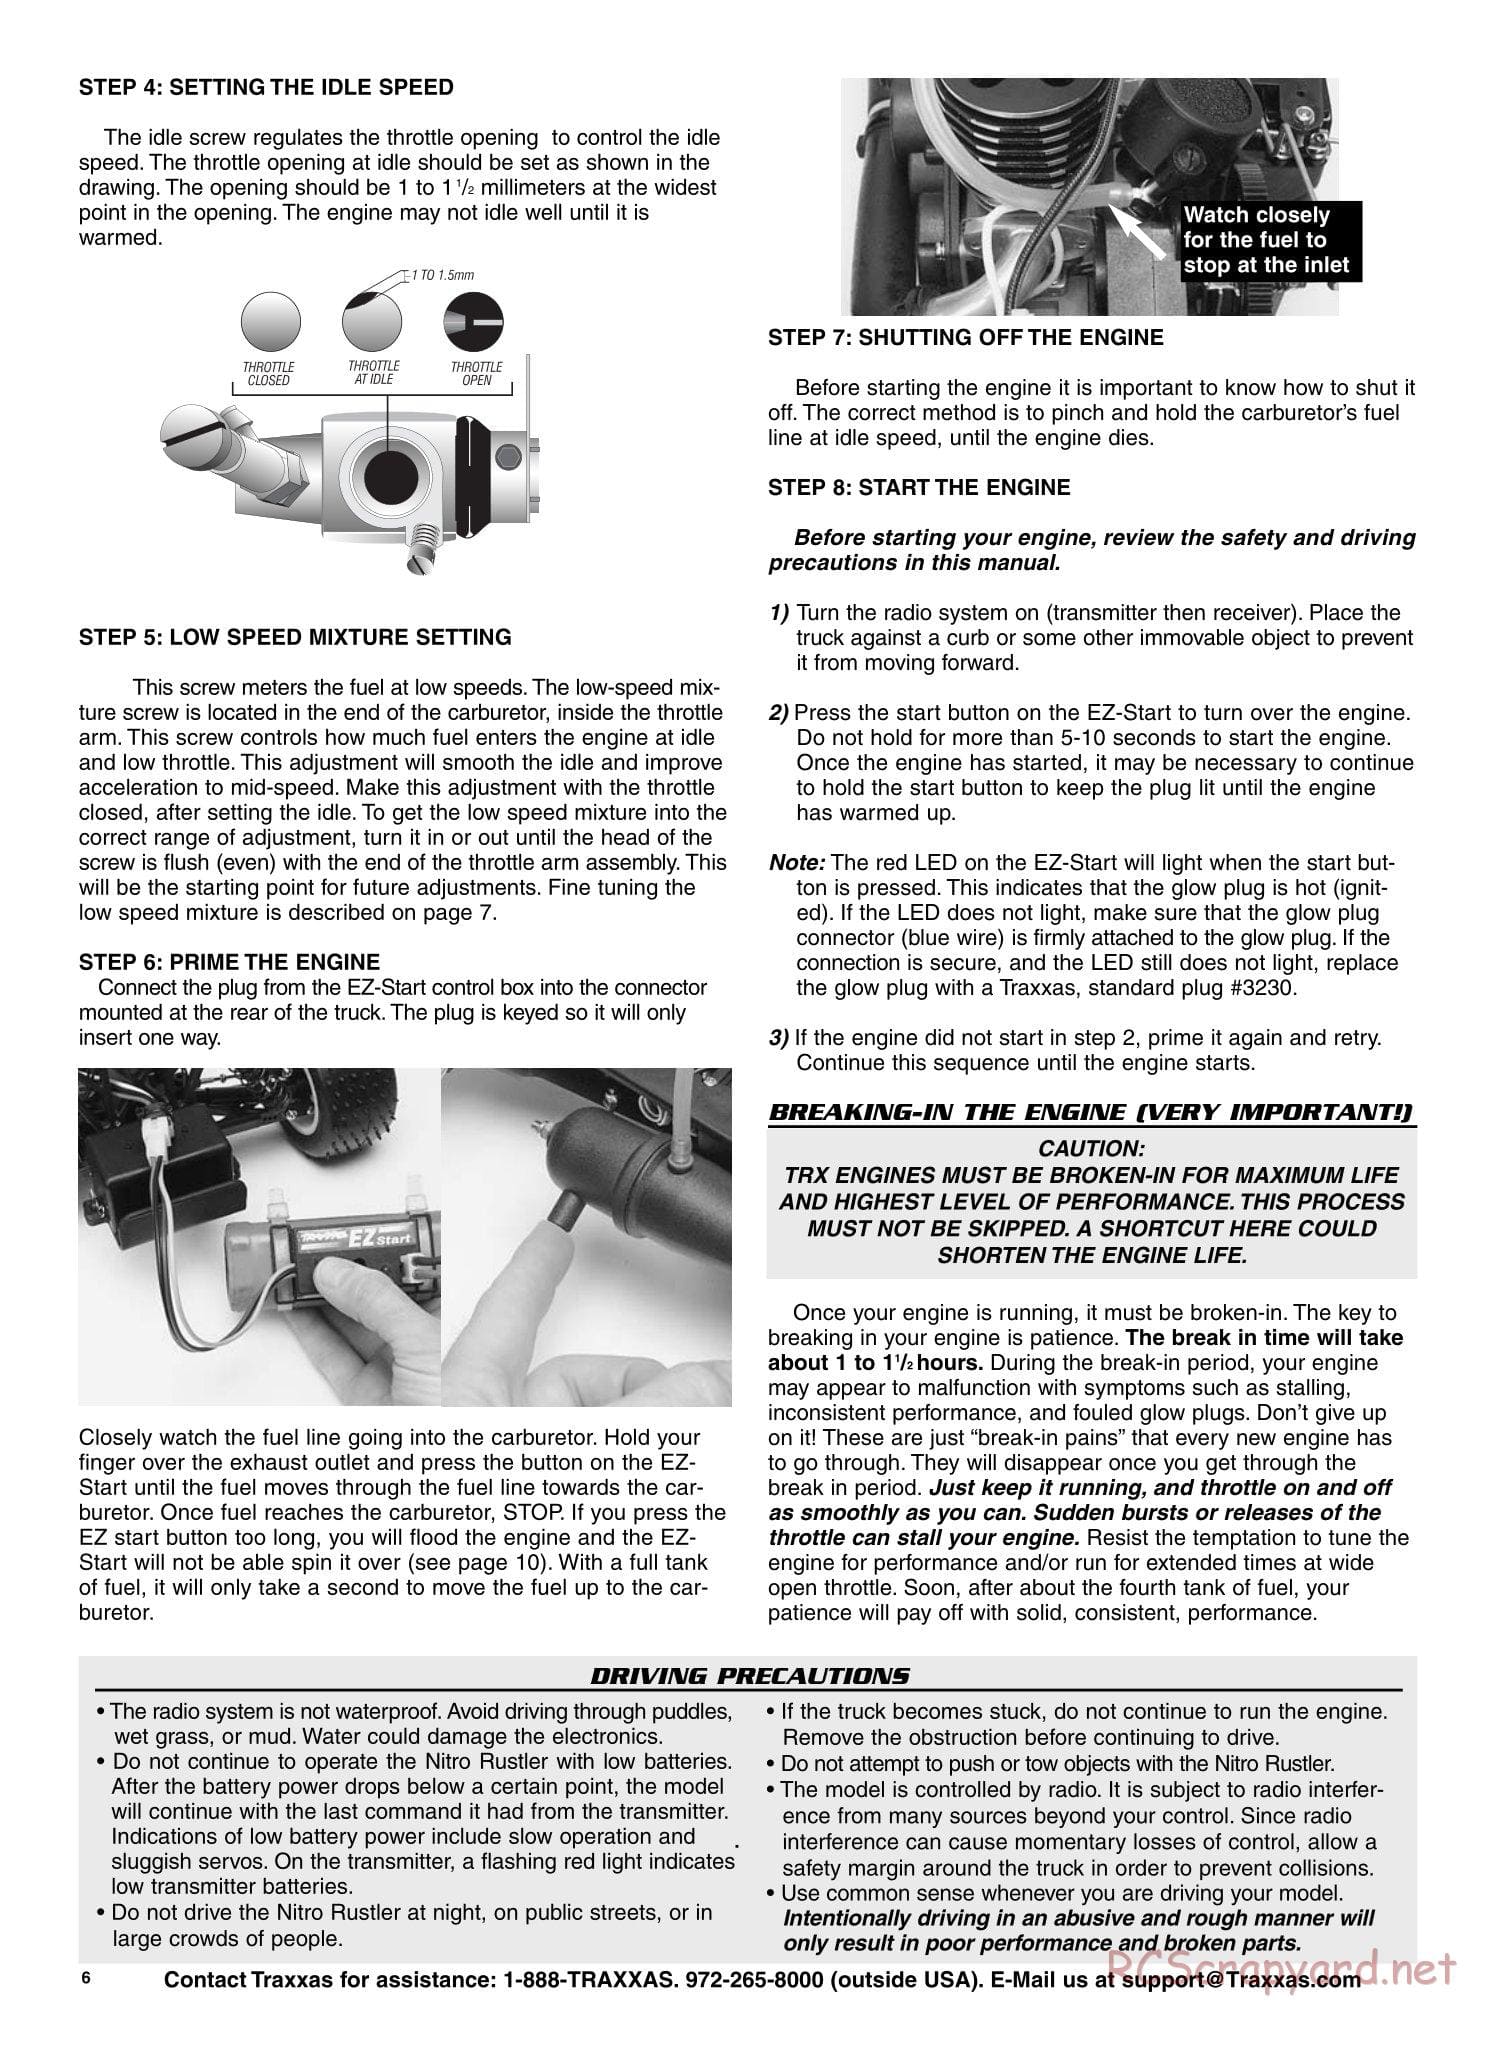 Traxxas - Nitro Rustler - Manual - Page 6